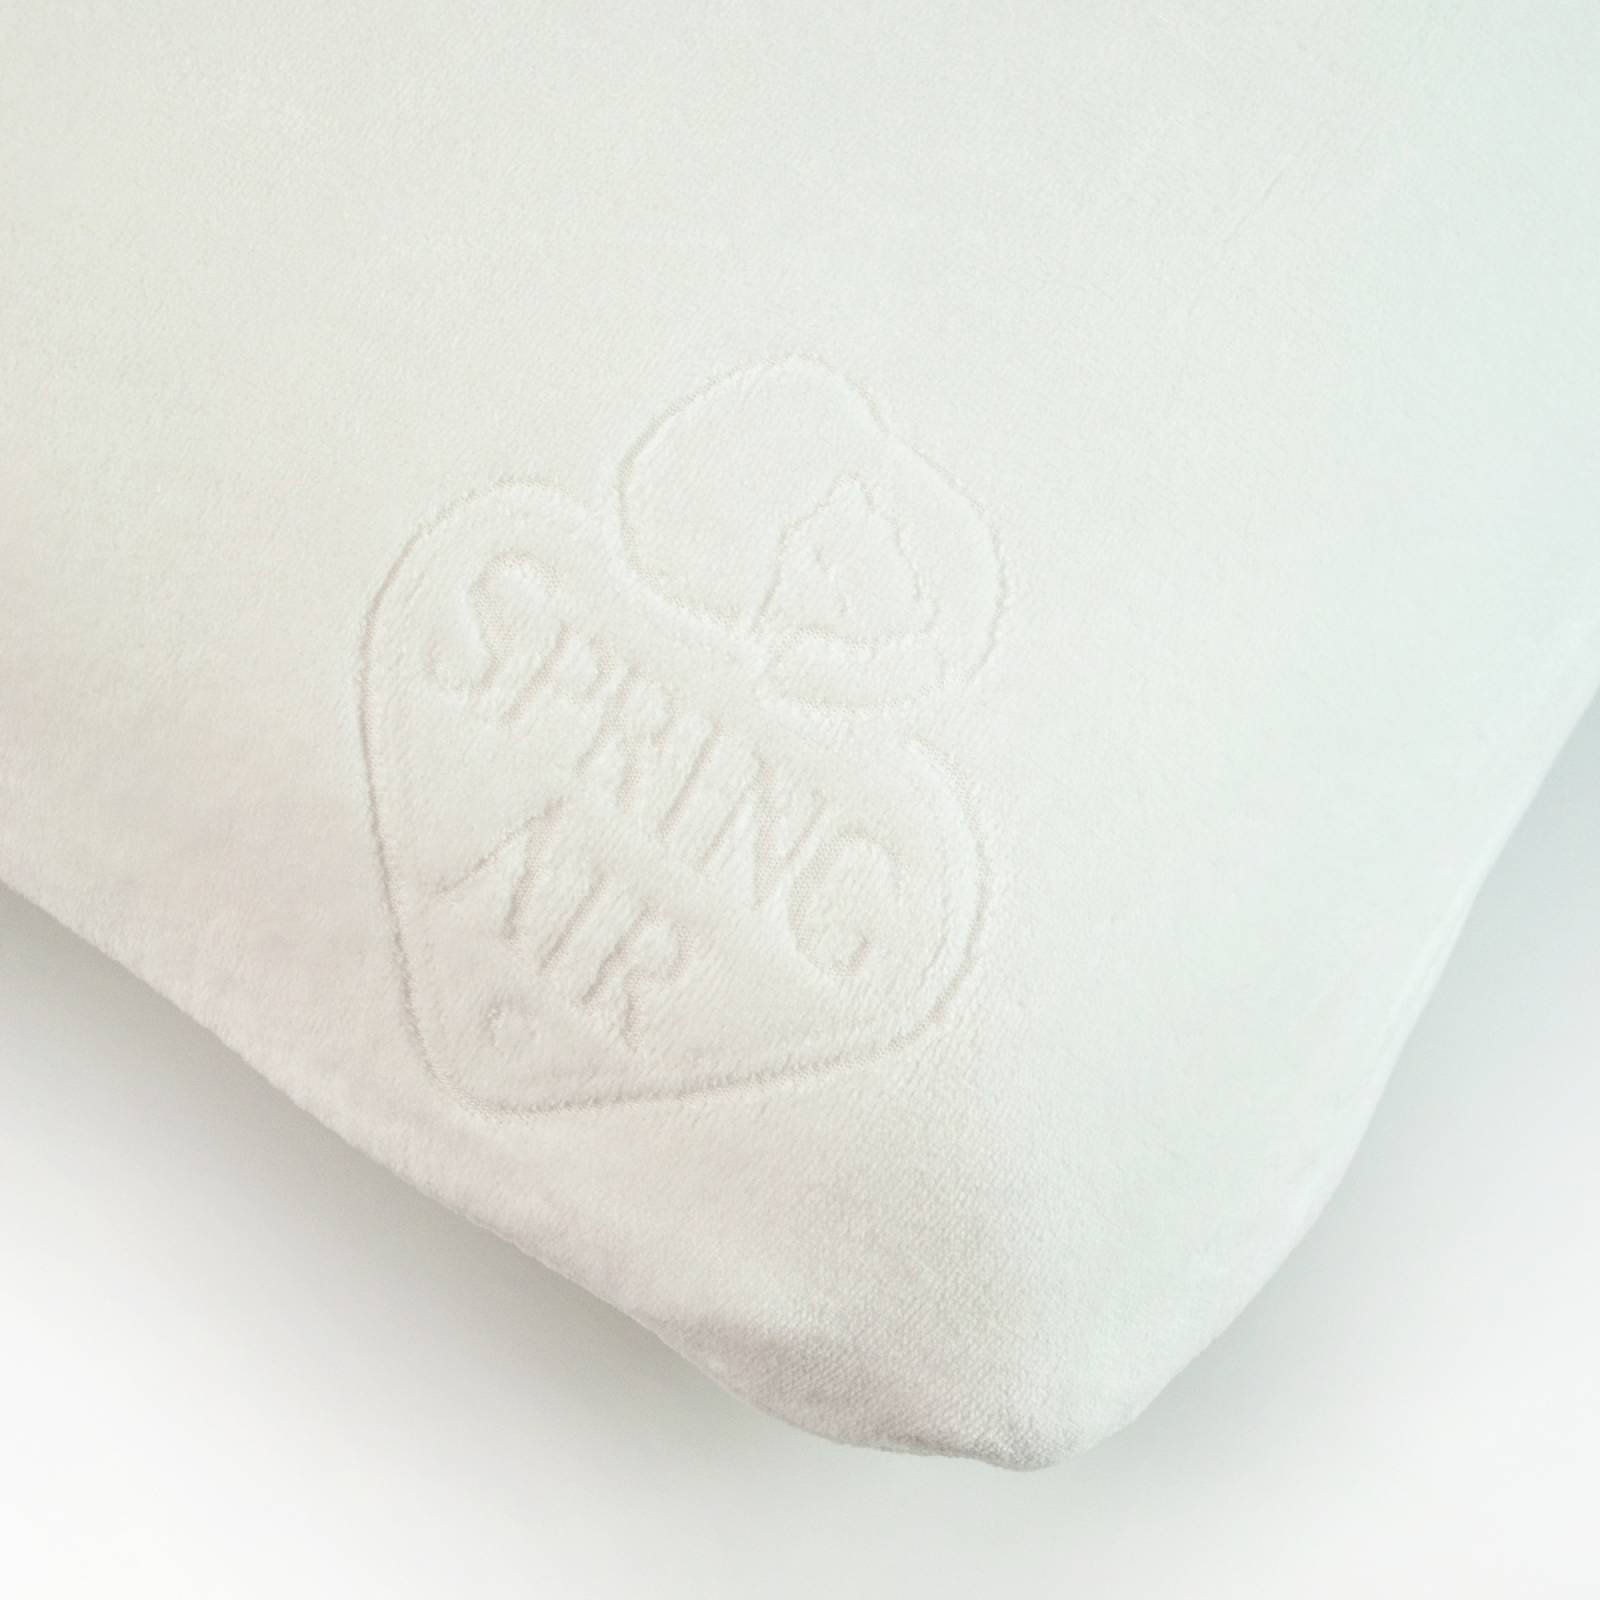 Almohada Spring Air Gentle Pillow - Firmeza media Estándar